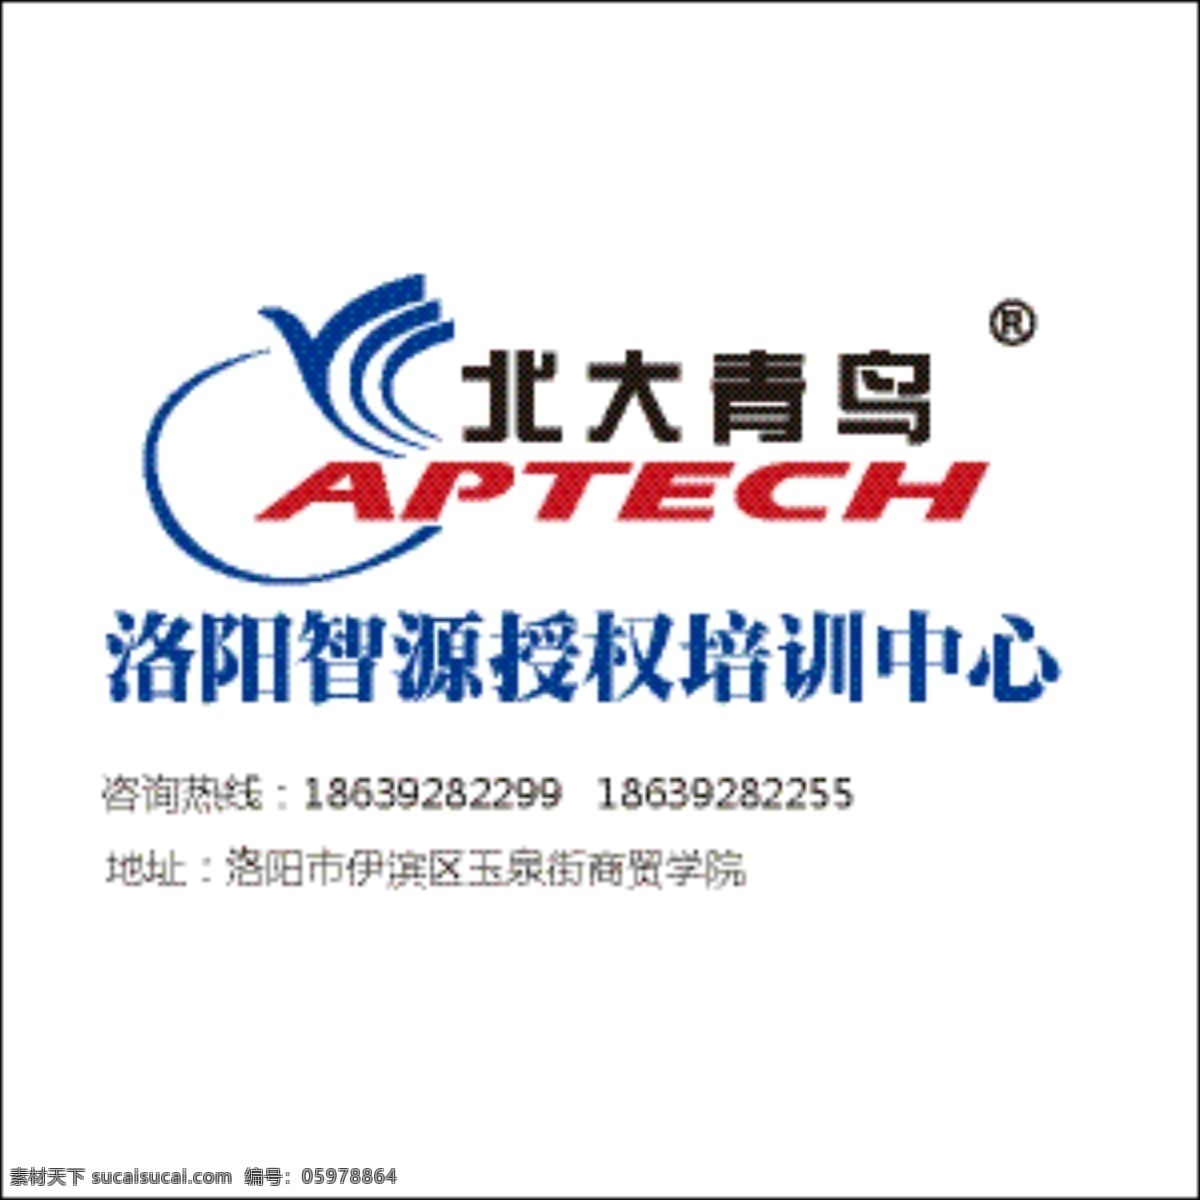 北大青鸟 aptech 文字logo 图形logo 鸟 标志 白色